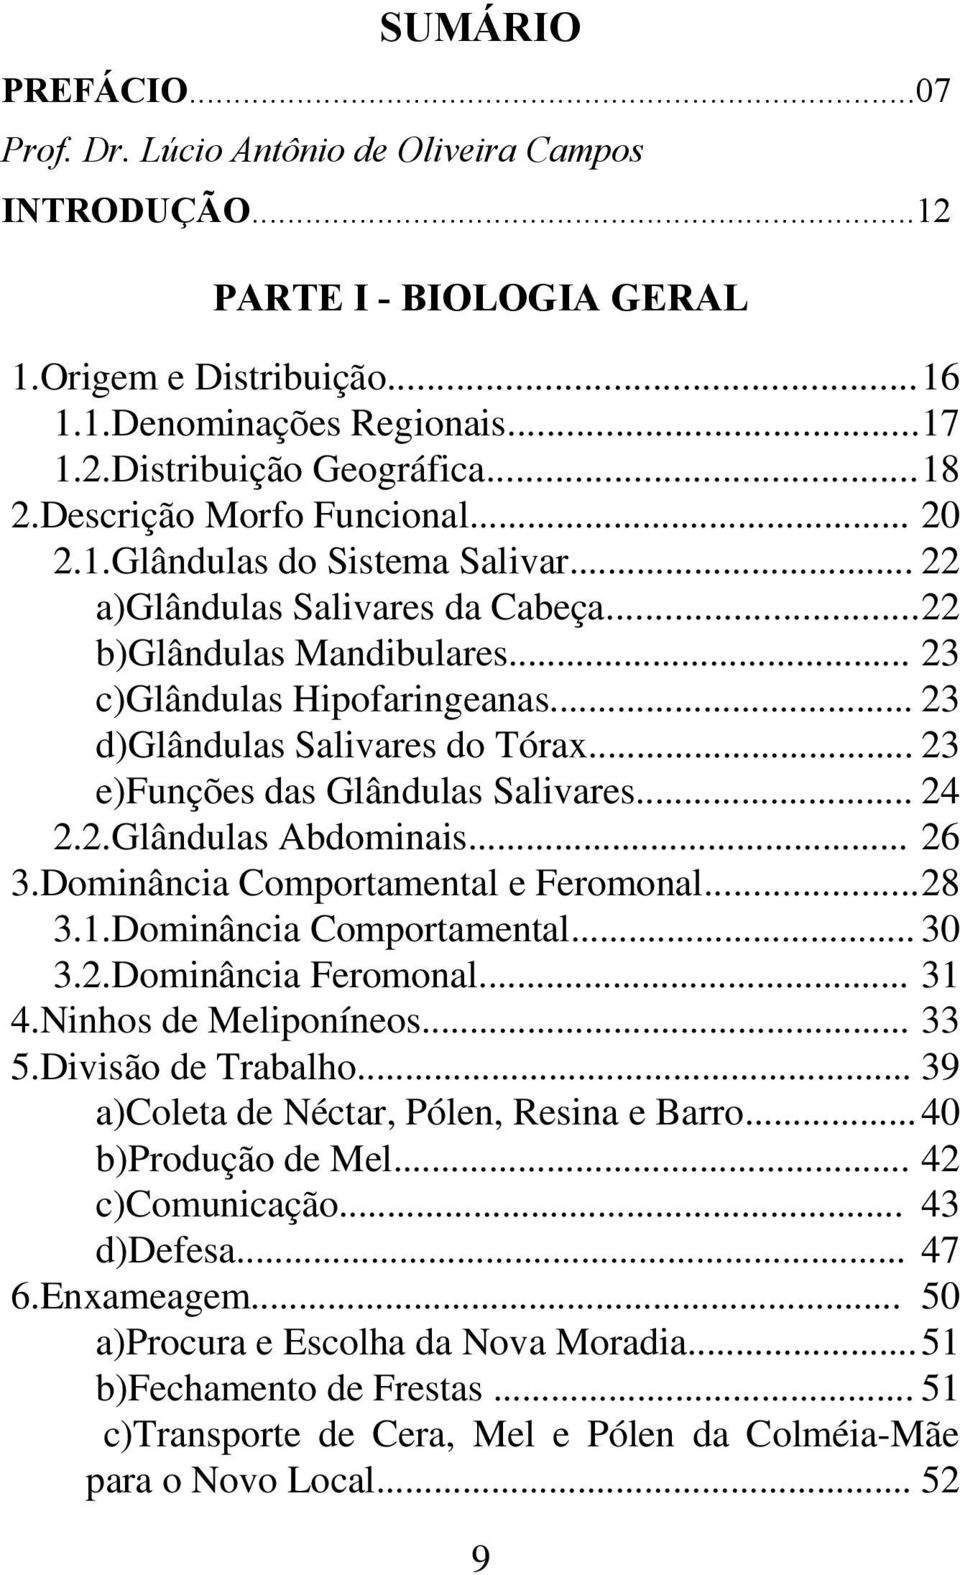 .. 23 d)glândulas Salivares do Tórax... 23 e)funções das Glândulas Salivares... 24 2.2.Glândulas Abdominais... 26 3.Dominância Comportamental e Feromonal...28 3.1.Dominância Comportamental... 30 3.2.Dominância Feromonal.